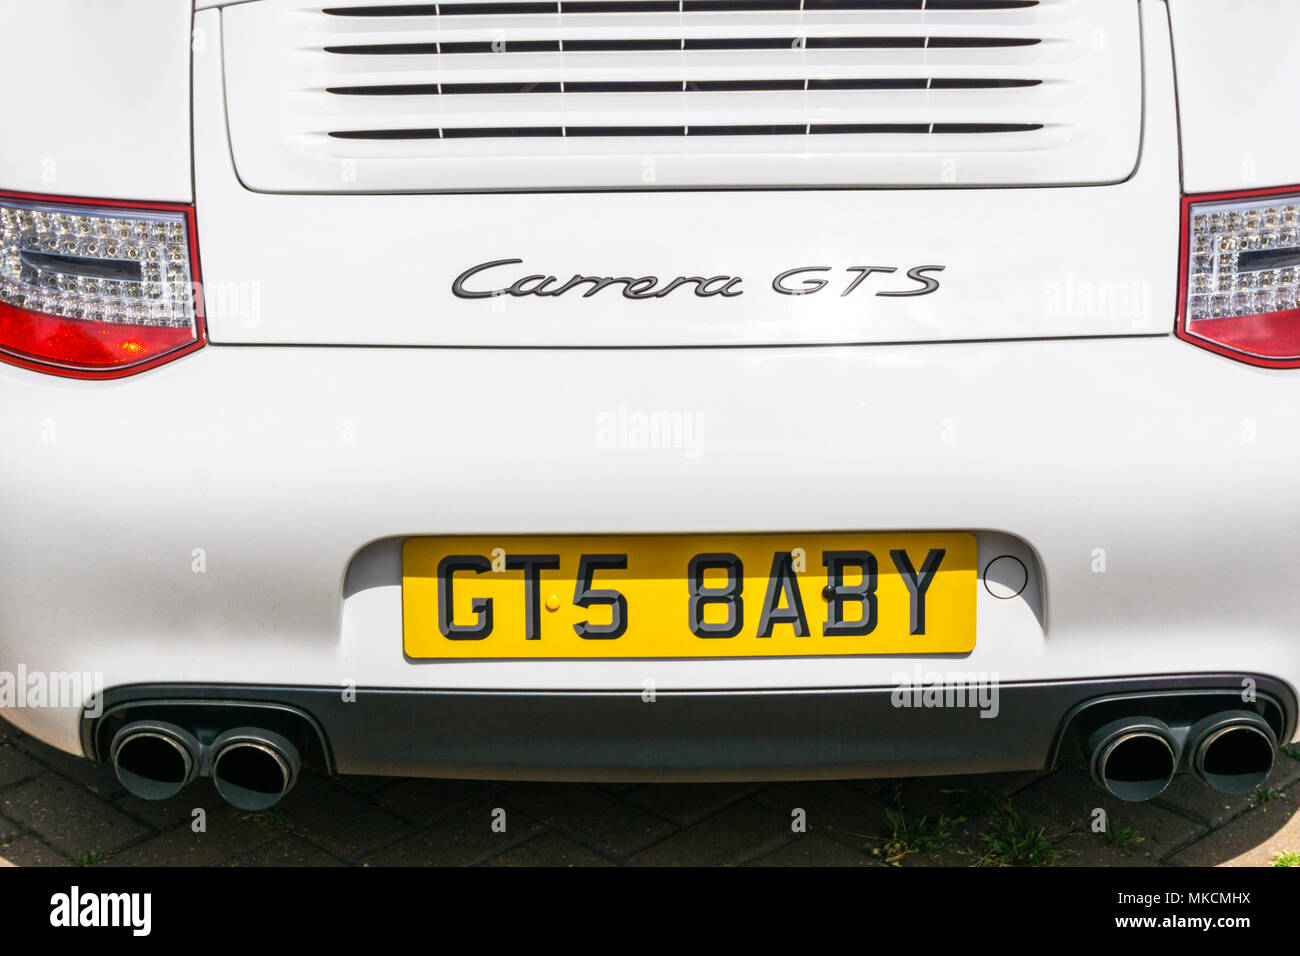 Une Porsche Carrera GTS avec une plaque de numéro personnalisé qui effectivement se lit bébé GTS. Banque D'Images